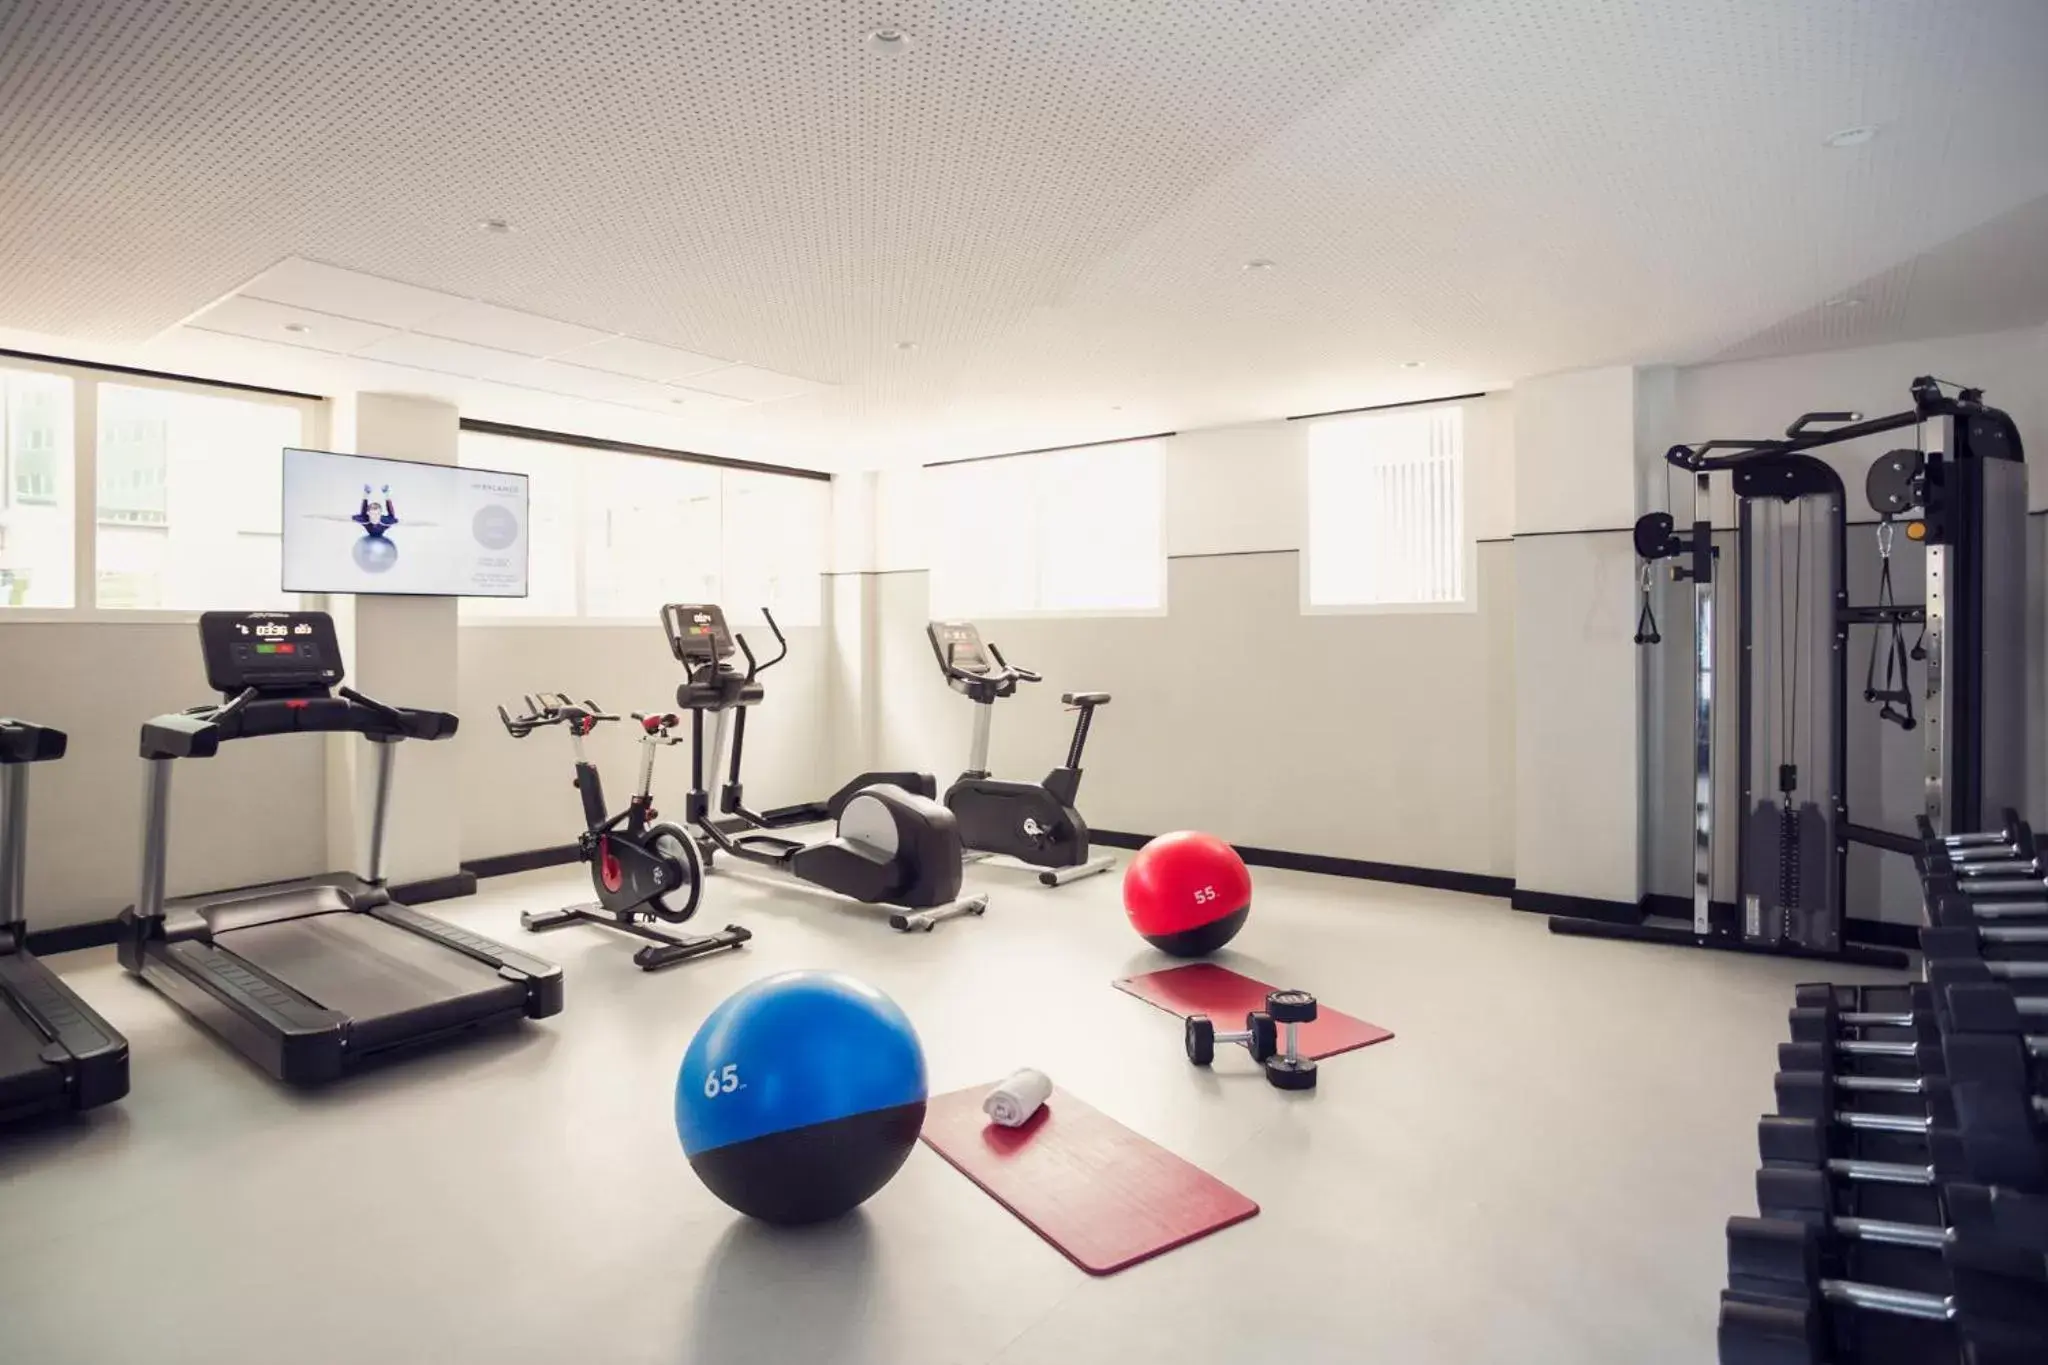 Fitness centre/facilities, Fitness Center/Facilities in Novotel Campo De Las Naciones